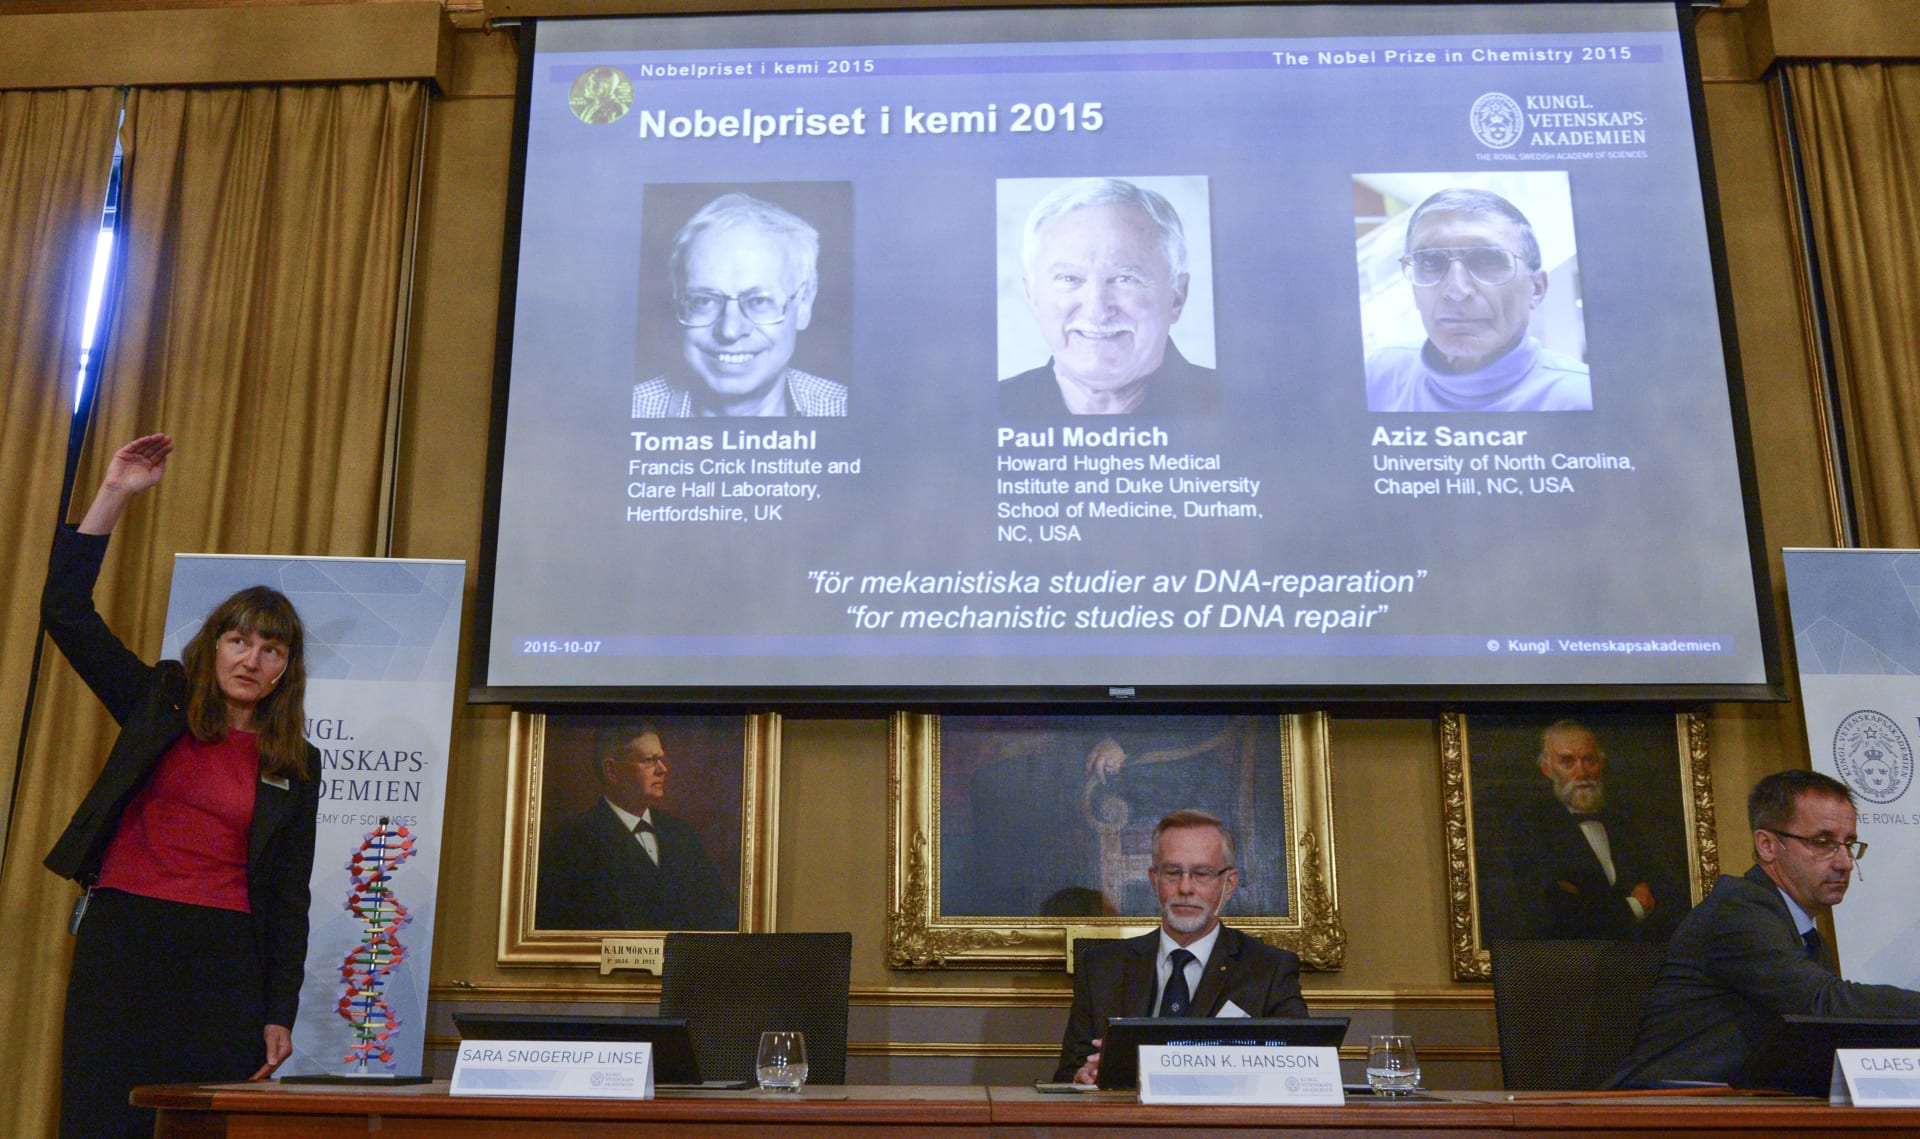 ثلاثة علماء يتقاسمون جائزة نوبل للكيمياء عن أبحاث تتعلق بإصلاح الحمض النووي